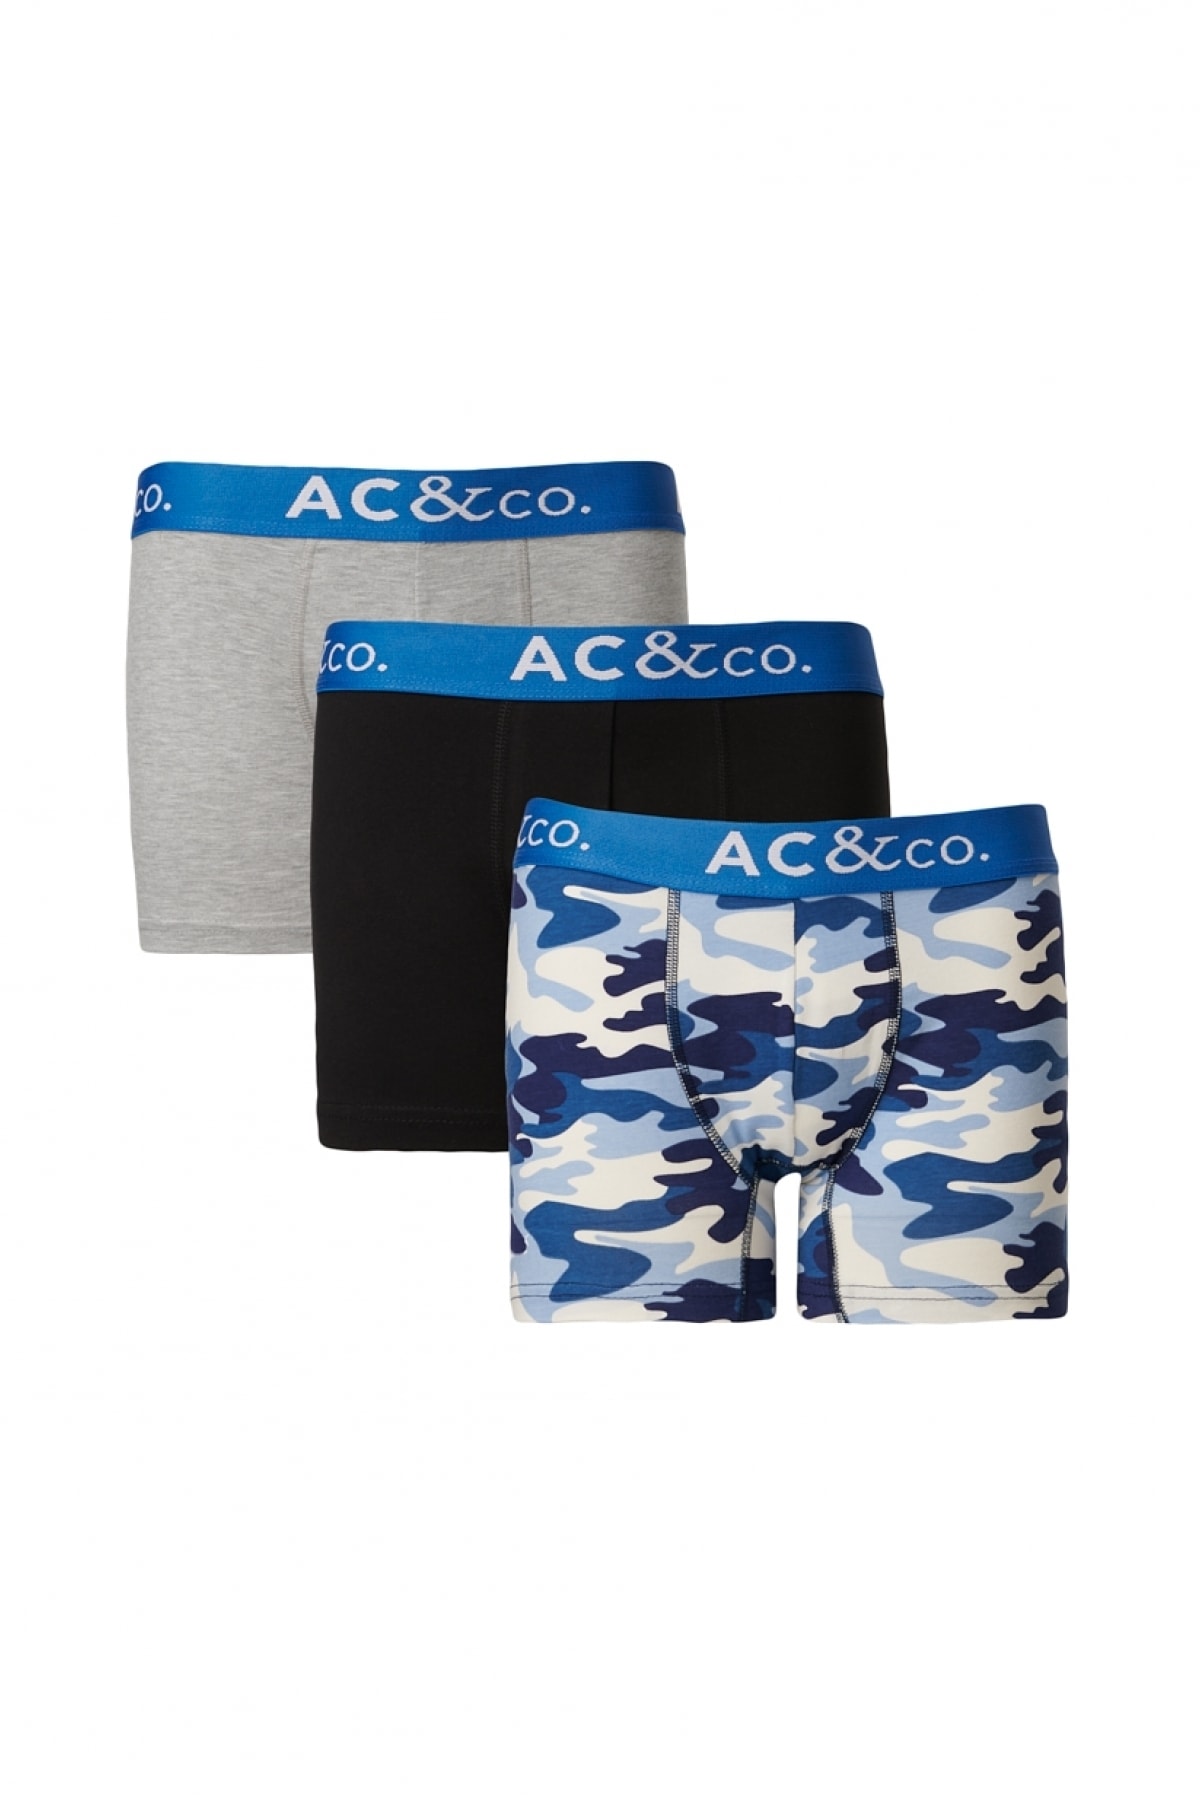 AC&Co / Altınyıldız Classics Men's Navy-Grey 3-Pack Stretchy Patterned Cotton Boxer.